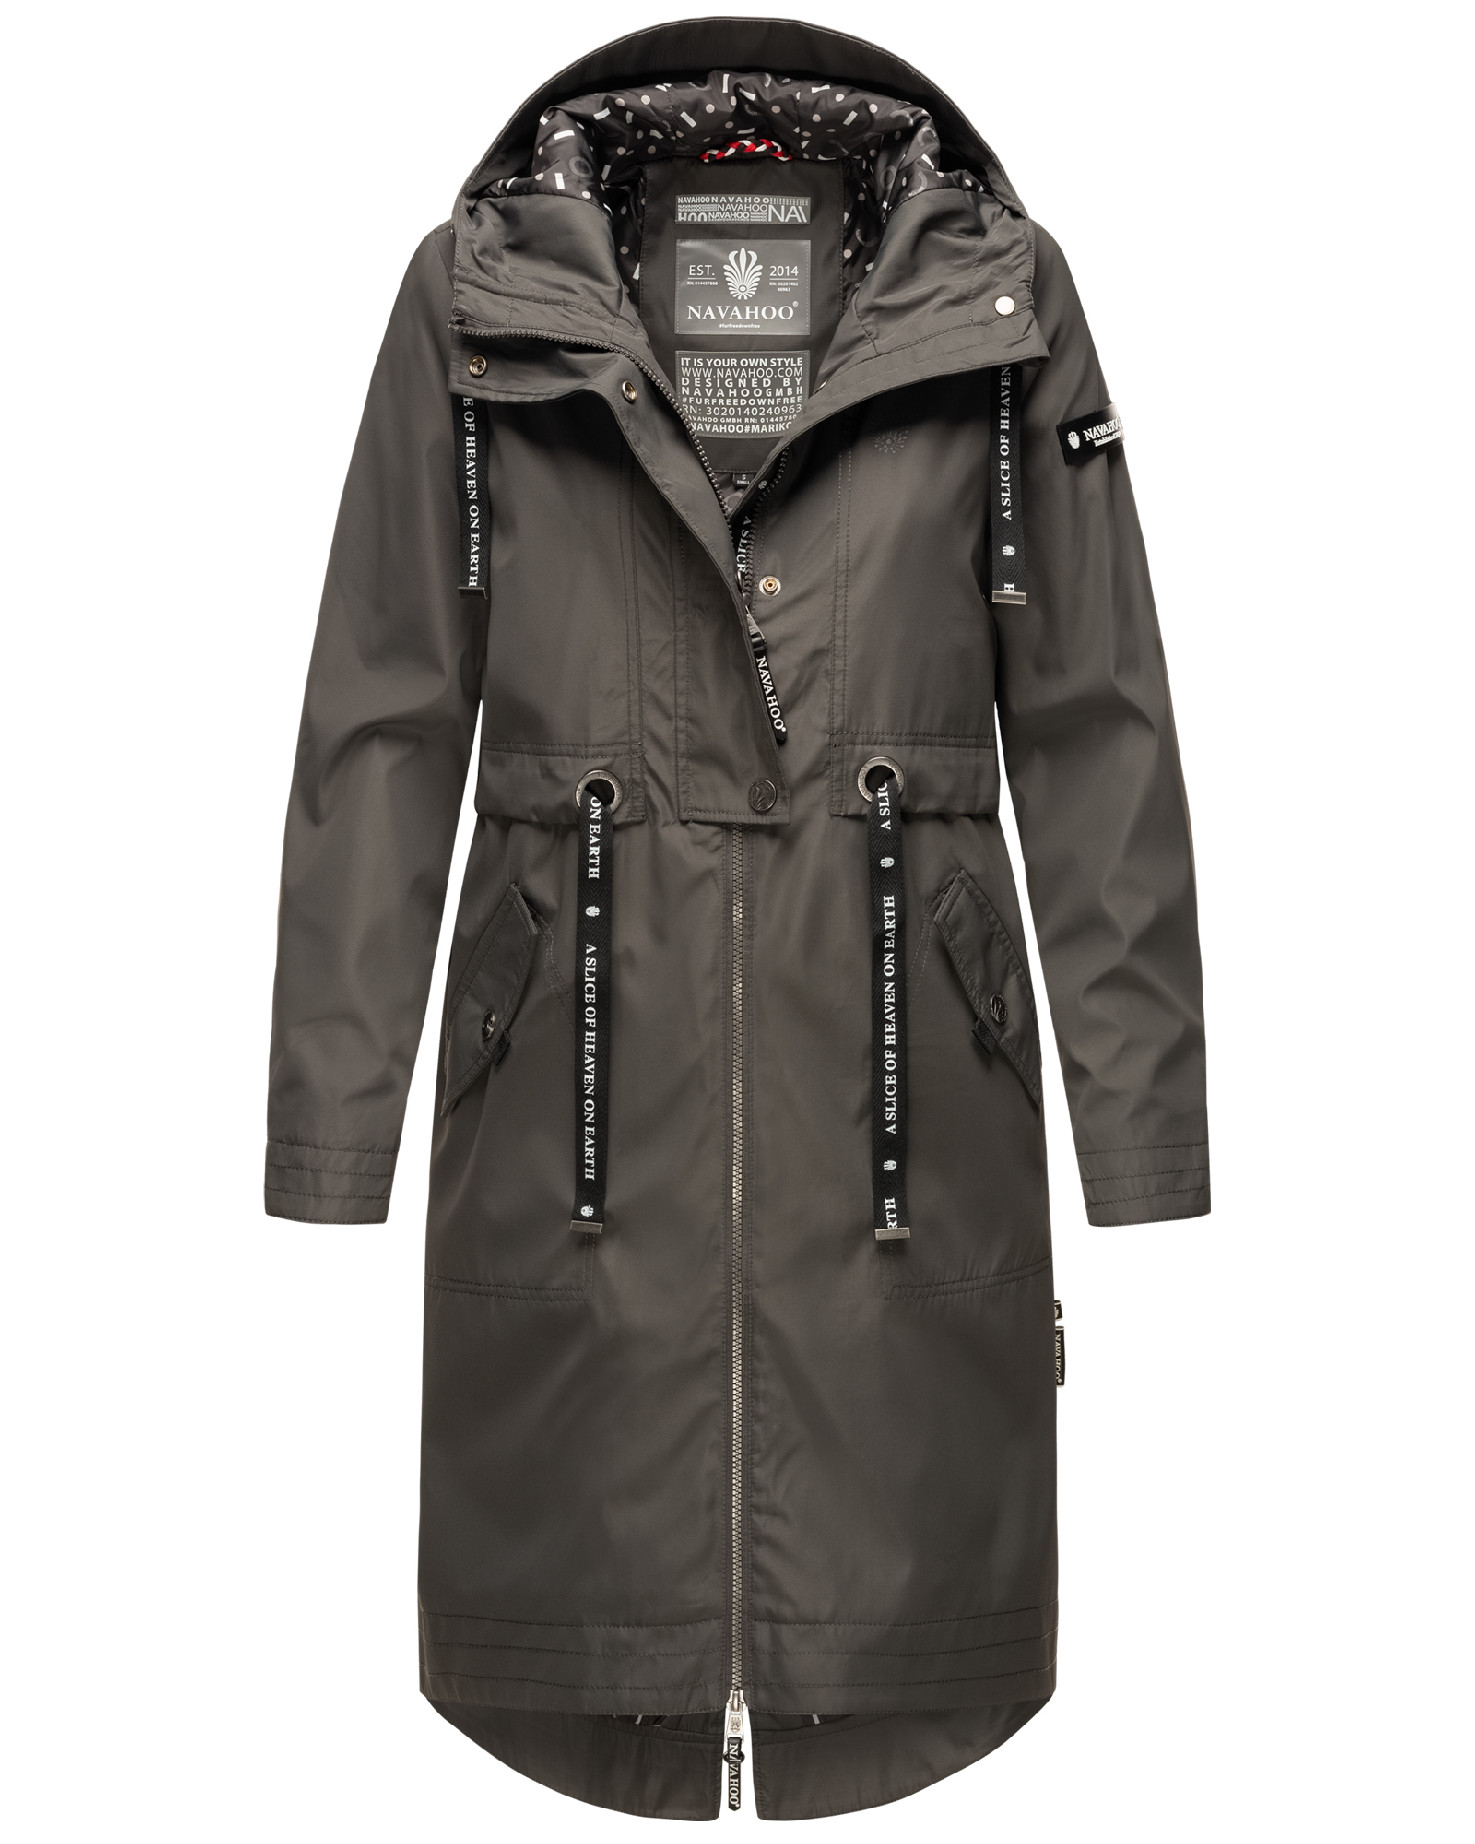 Dámský kabát s kapucí Josinaa Navahoo - ANTRACITE Velikost: XL